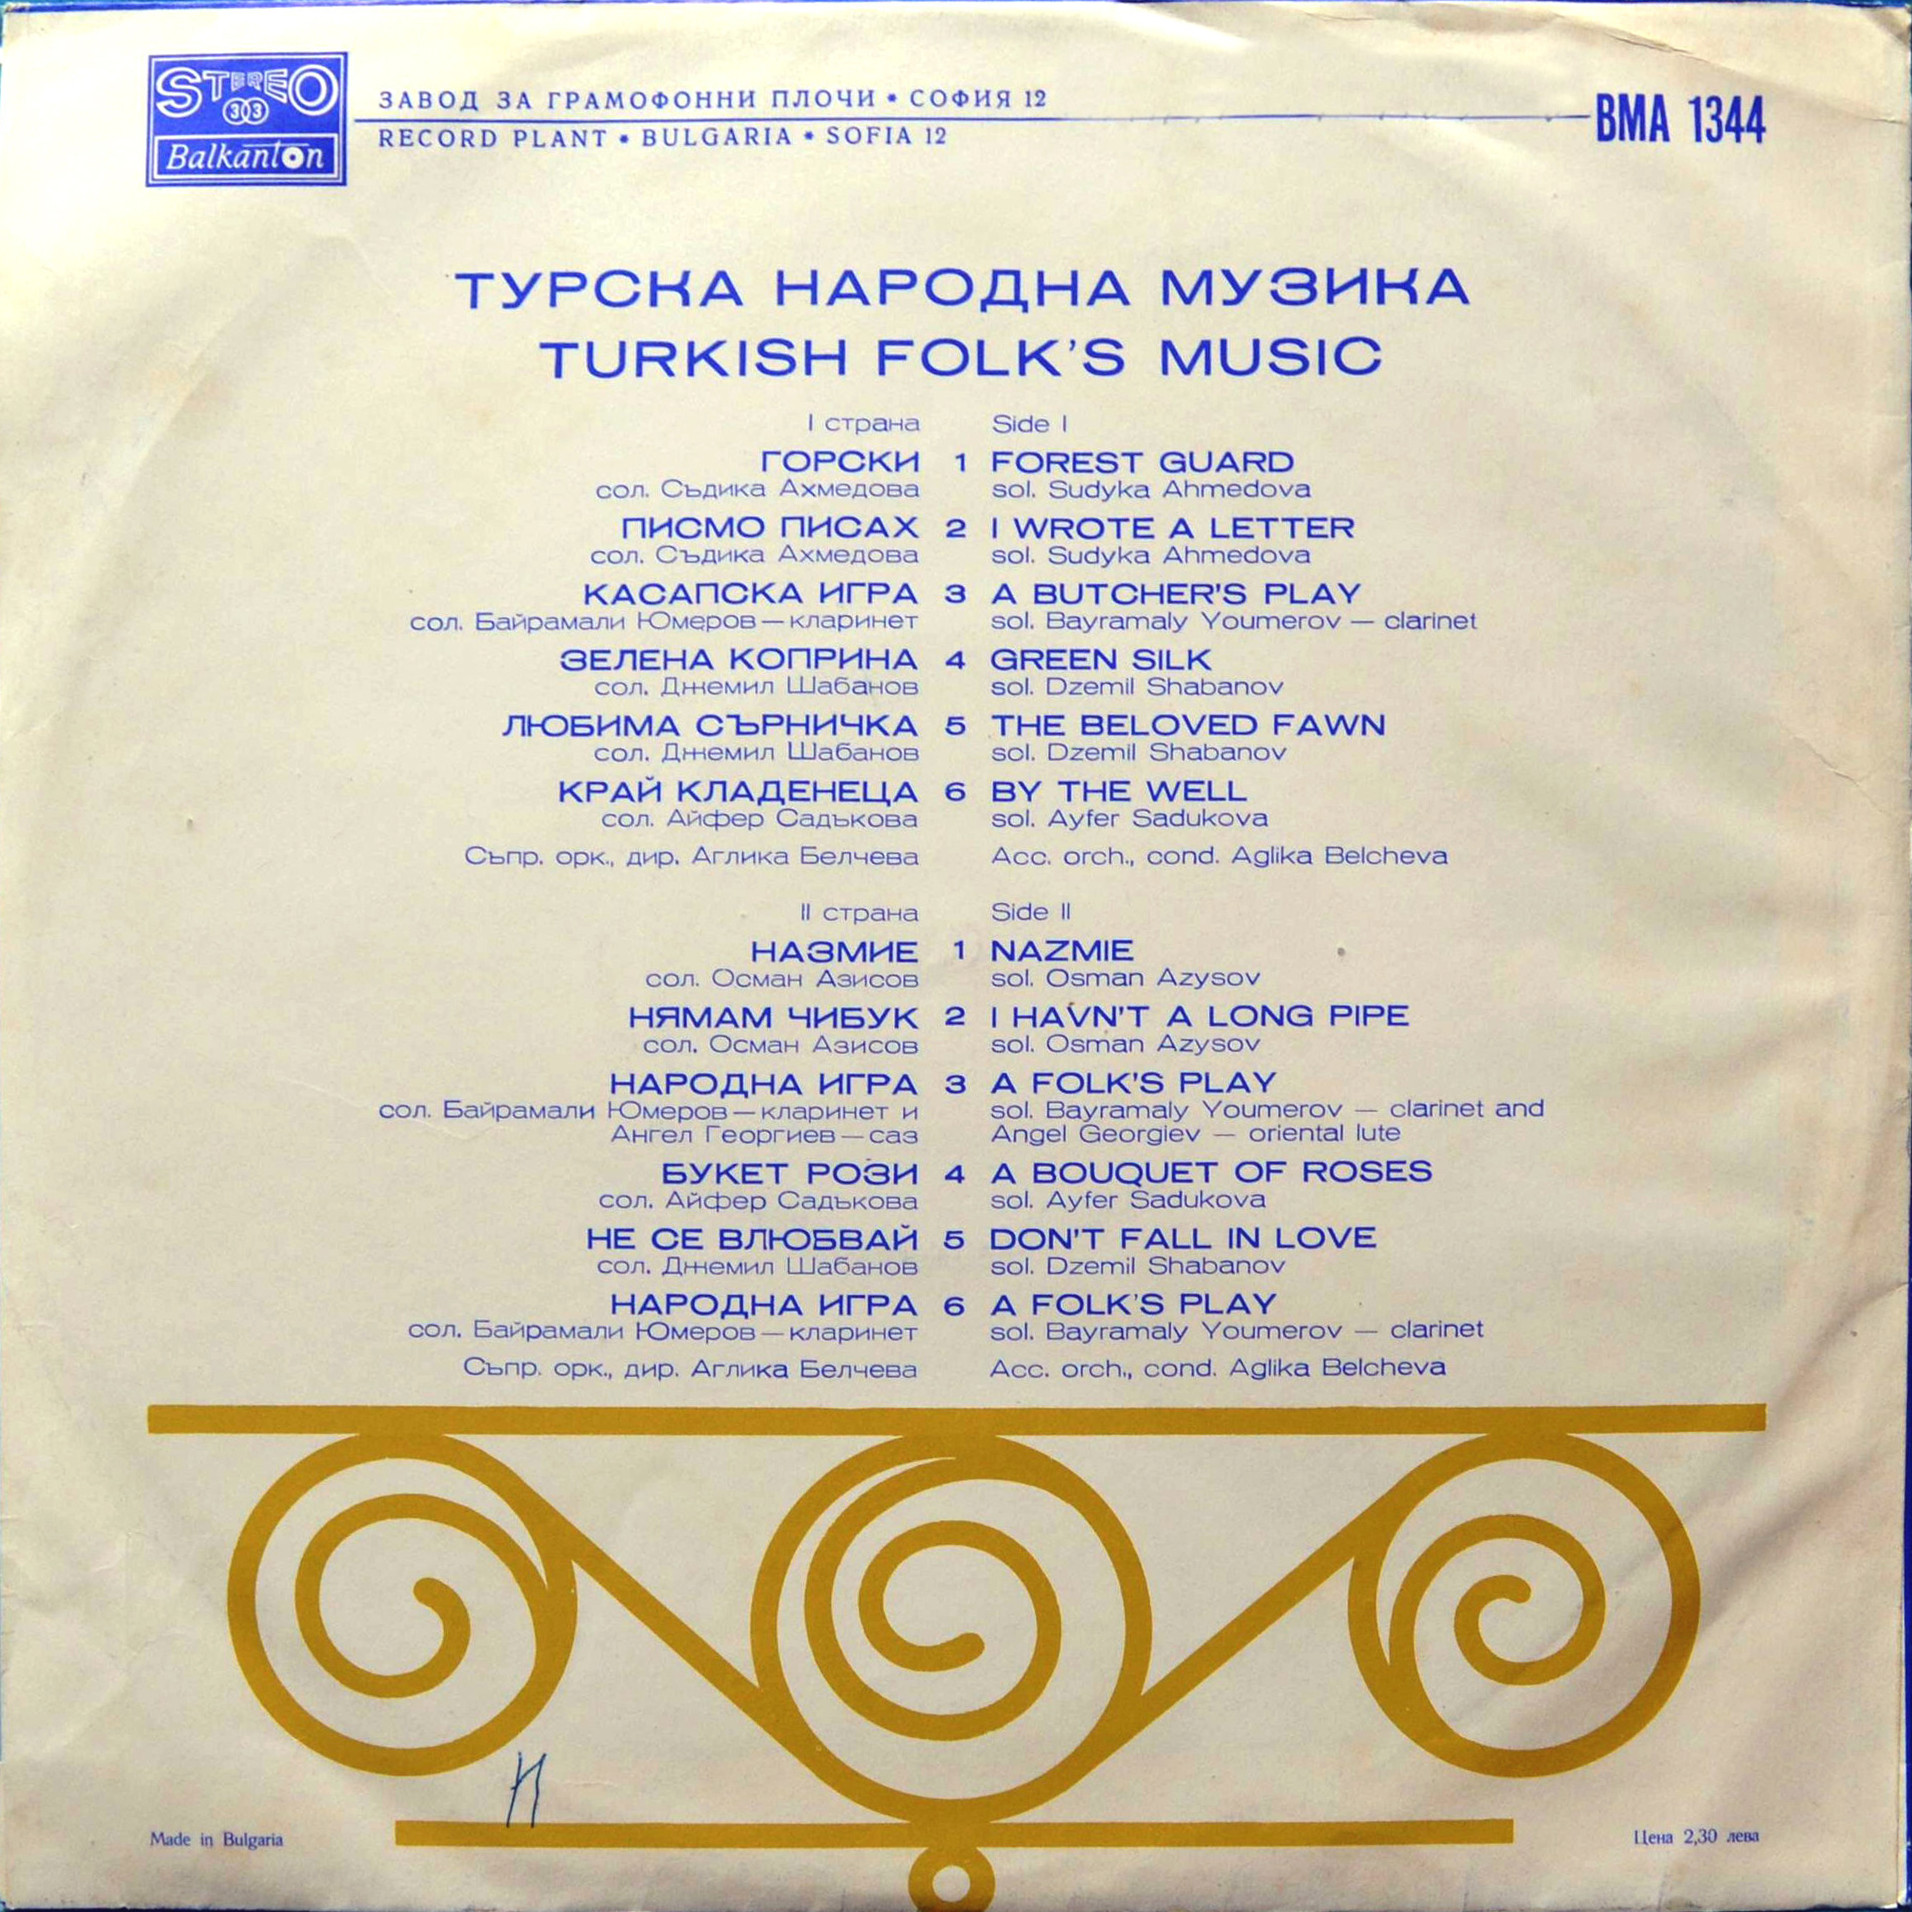 Турска народна музика